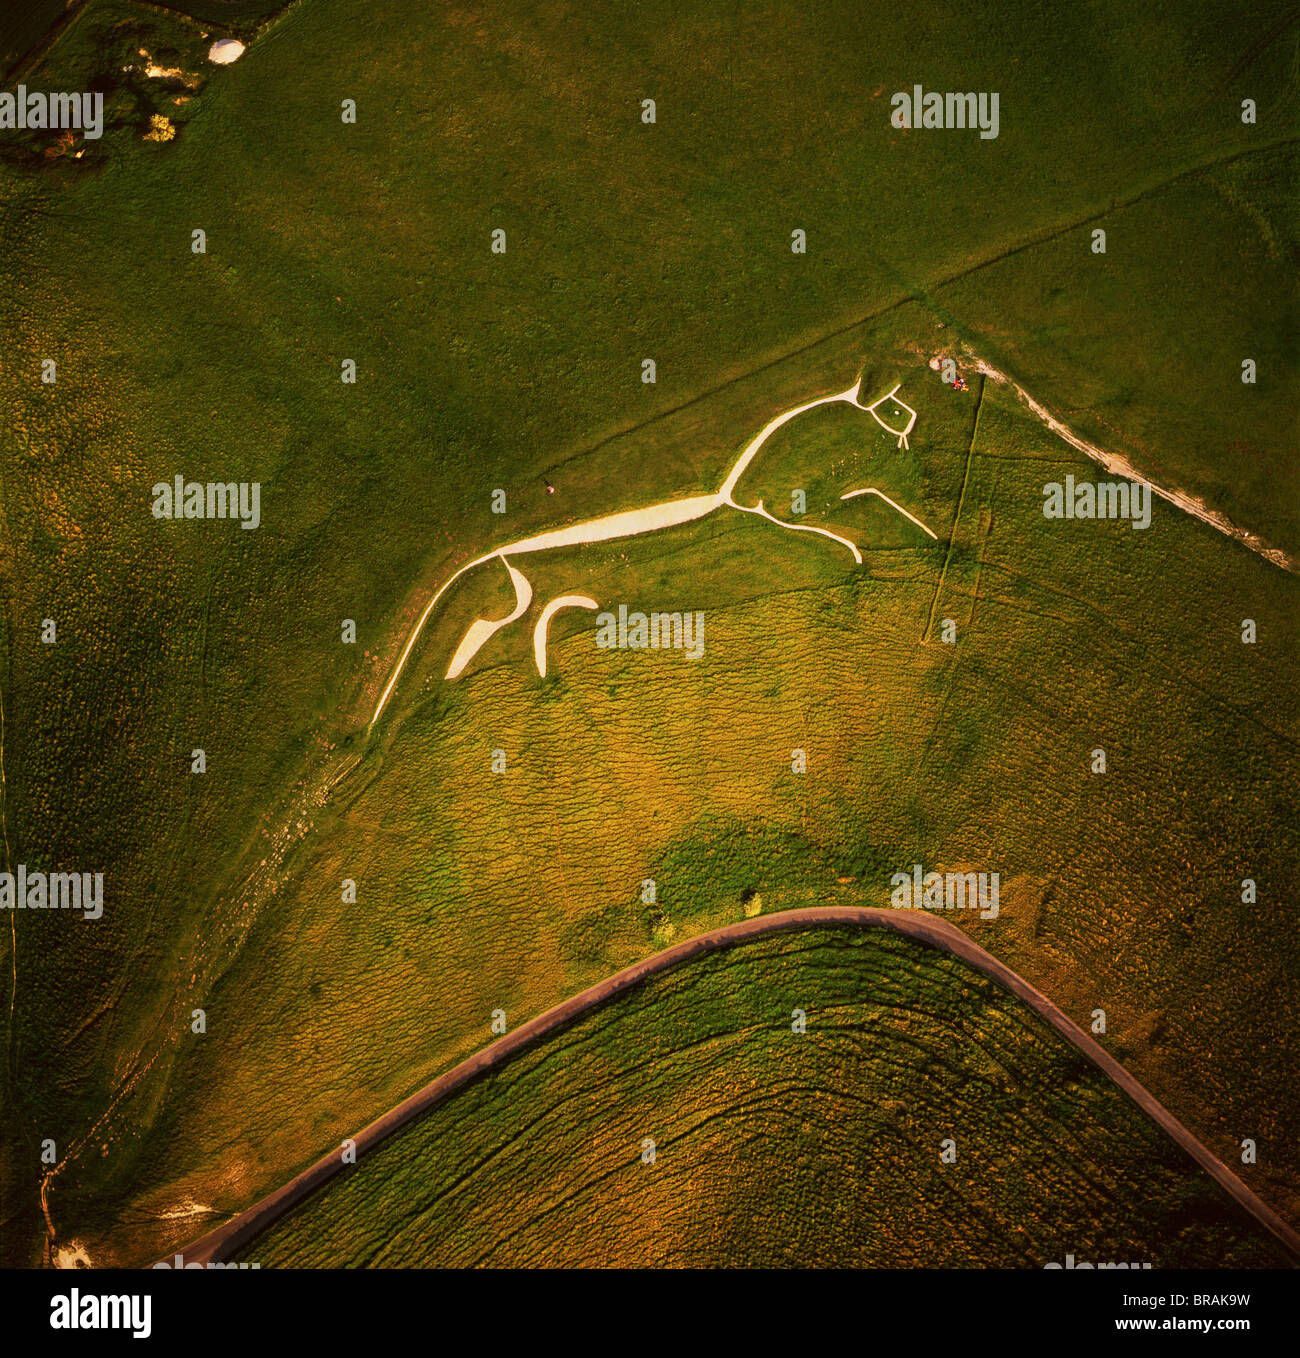 Luftaufnahme von Uffington White Horse, Berkshire Downs, Vale of White Horse, Oxfordshire, England, Vereinigtes Königreich, Europa Stockfoto